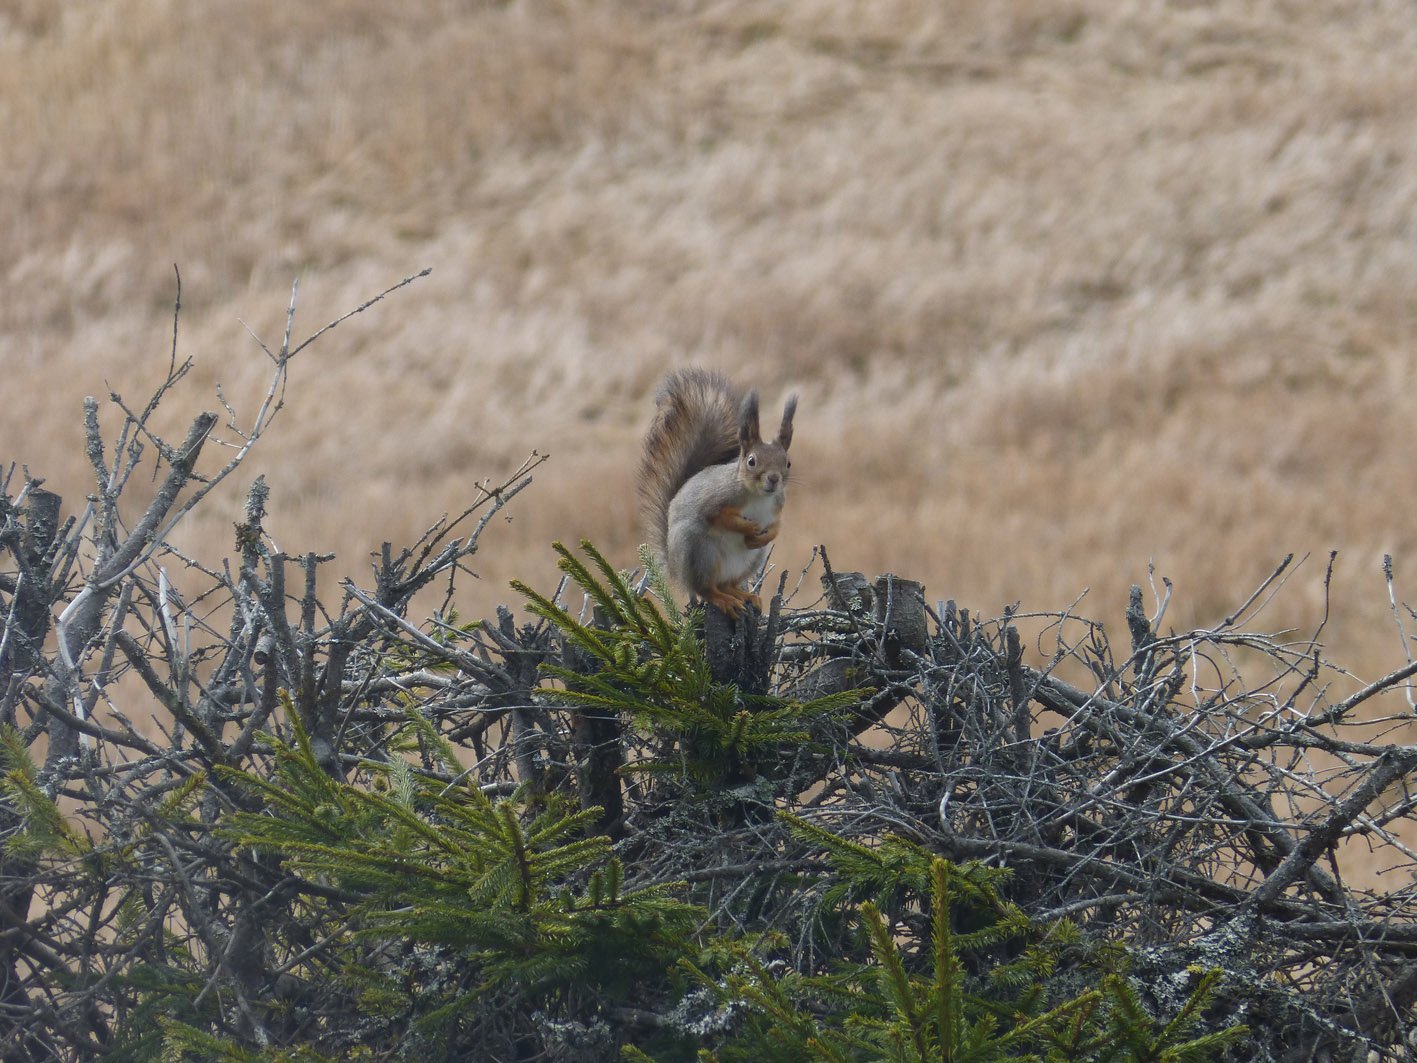 Squirrel-on-a-shrub-1.jpg